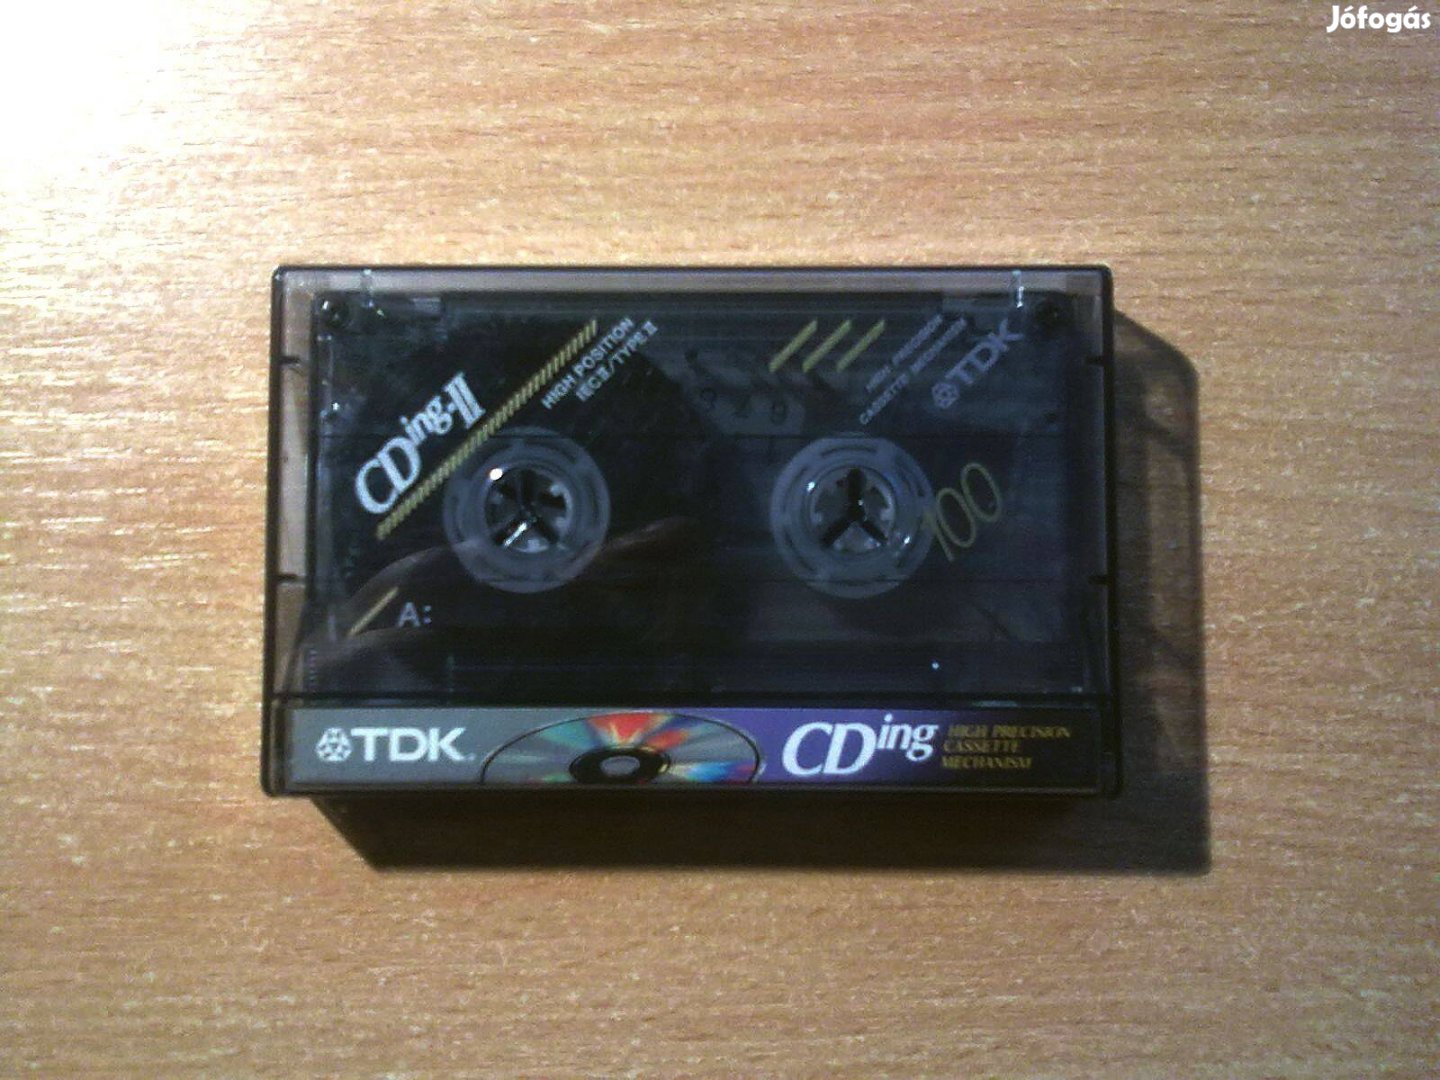 TDK Cding-II 100 (High Precision Cassette Mechanism)